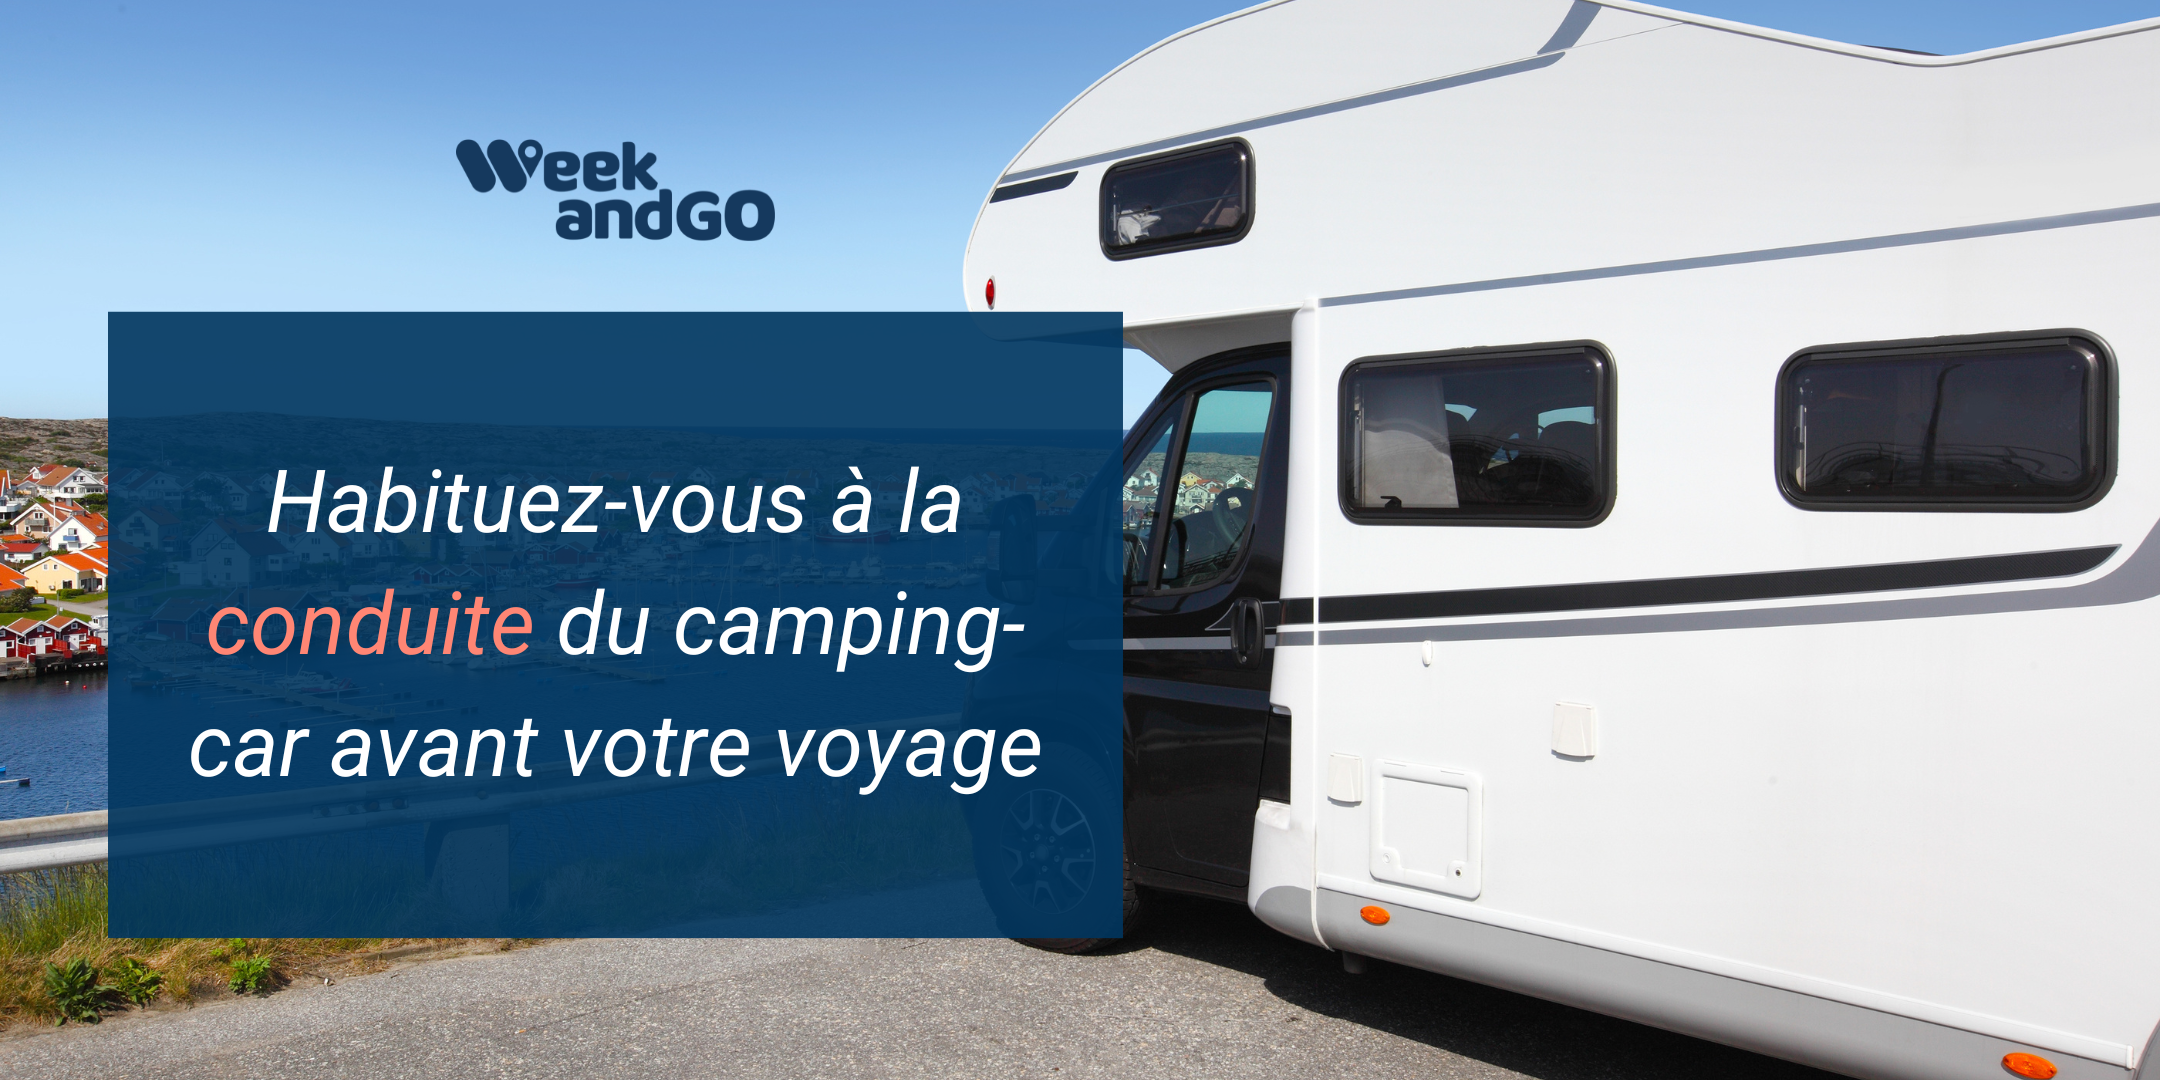 Habituez-vous à la conduite du camping-car avant votre voyage